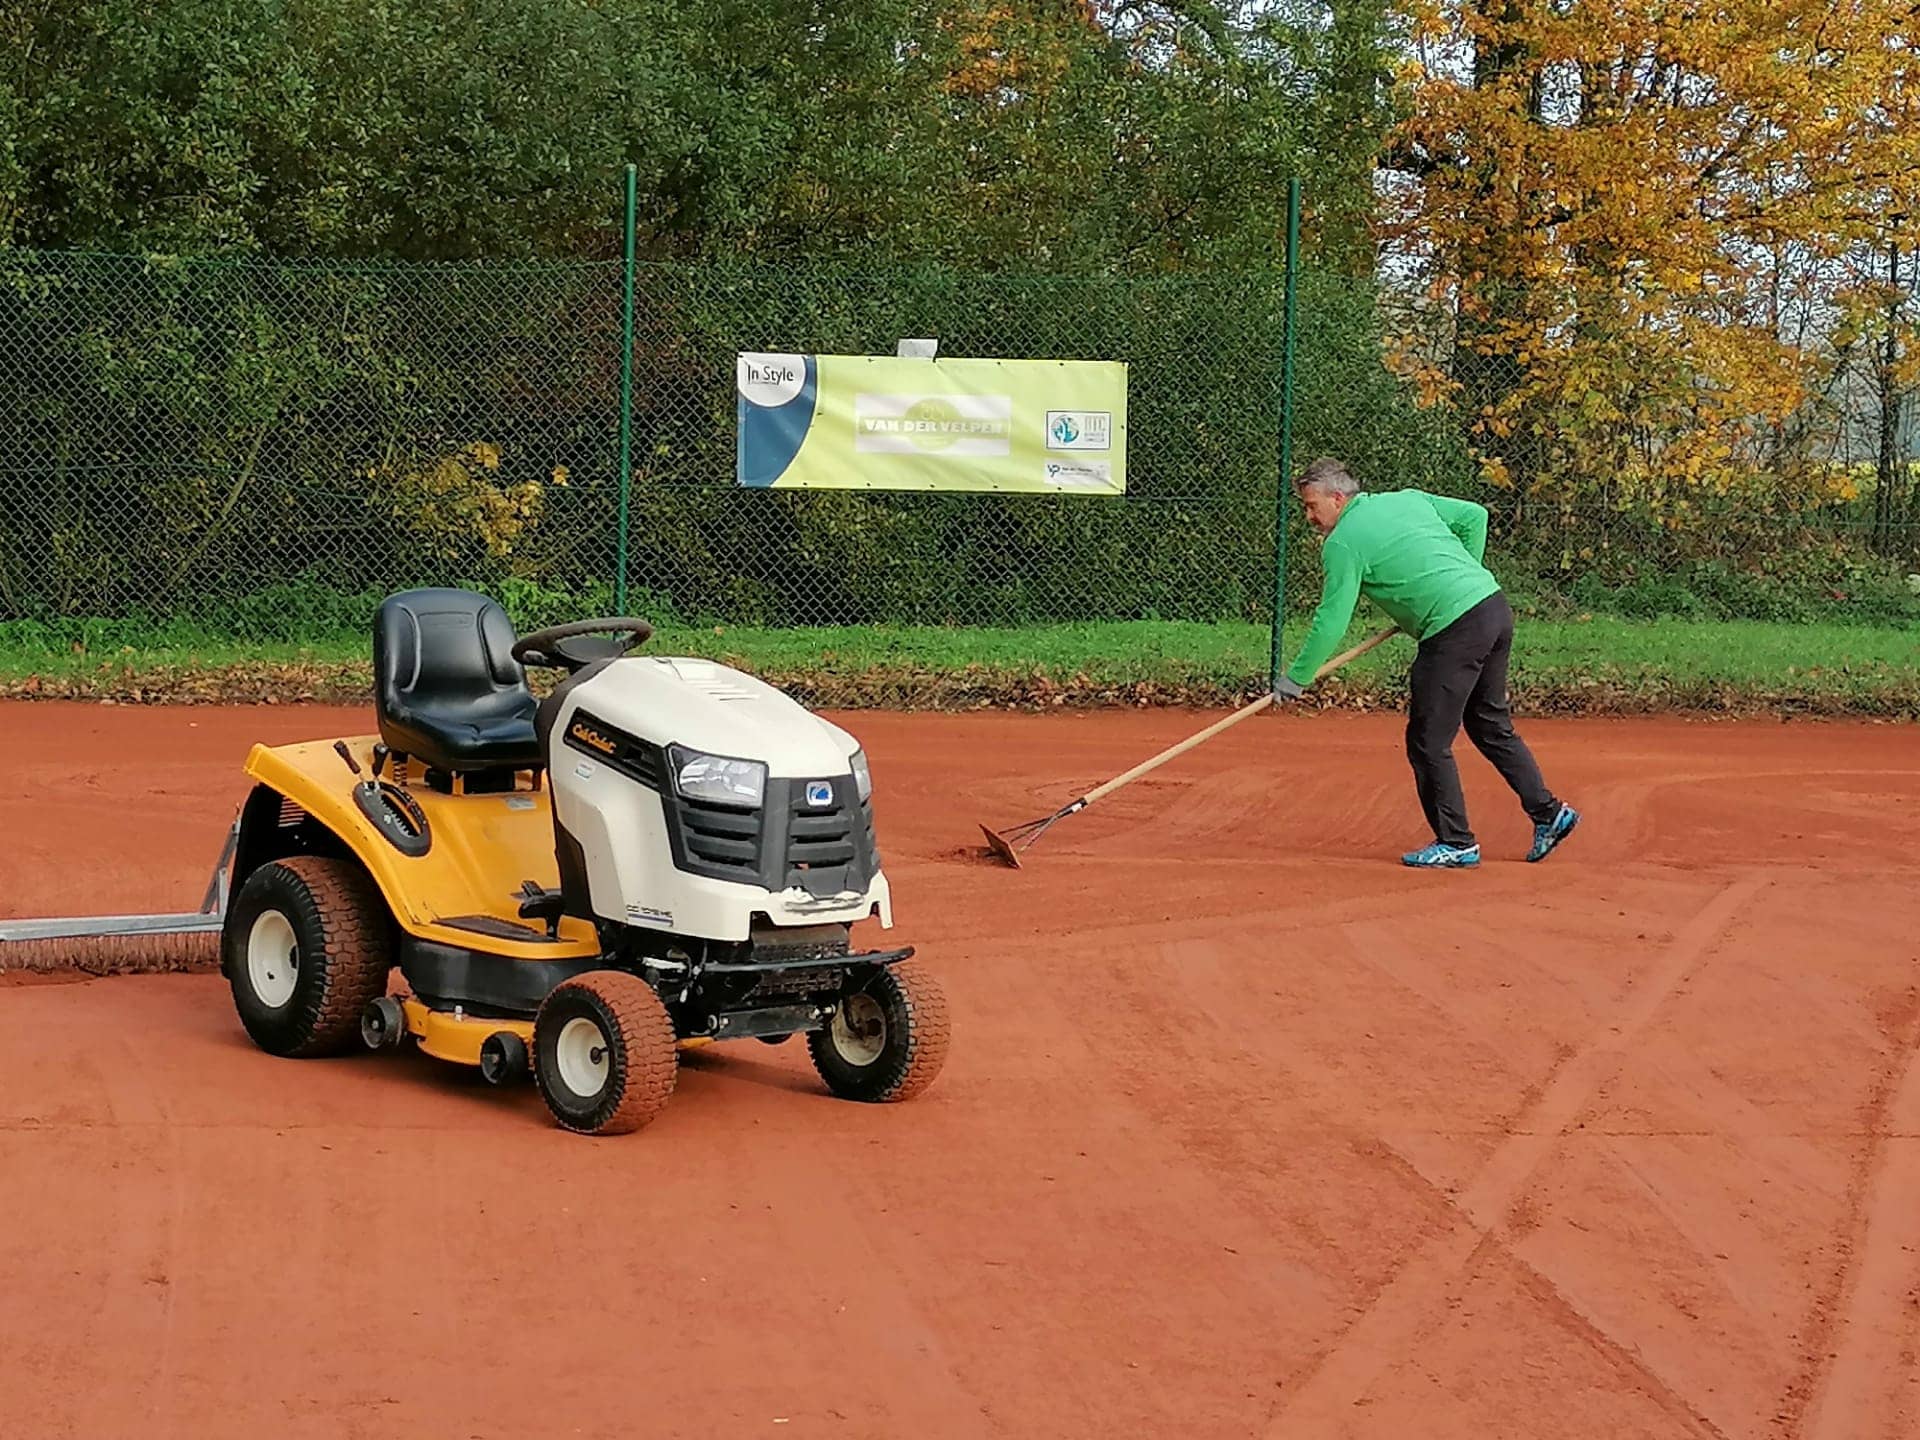 Bierbeekse Tennisclub innoveert op ecologische manier